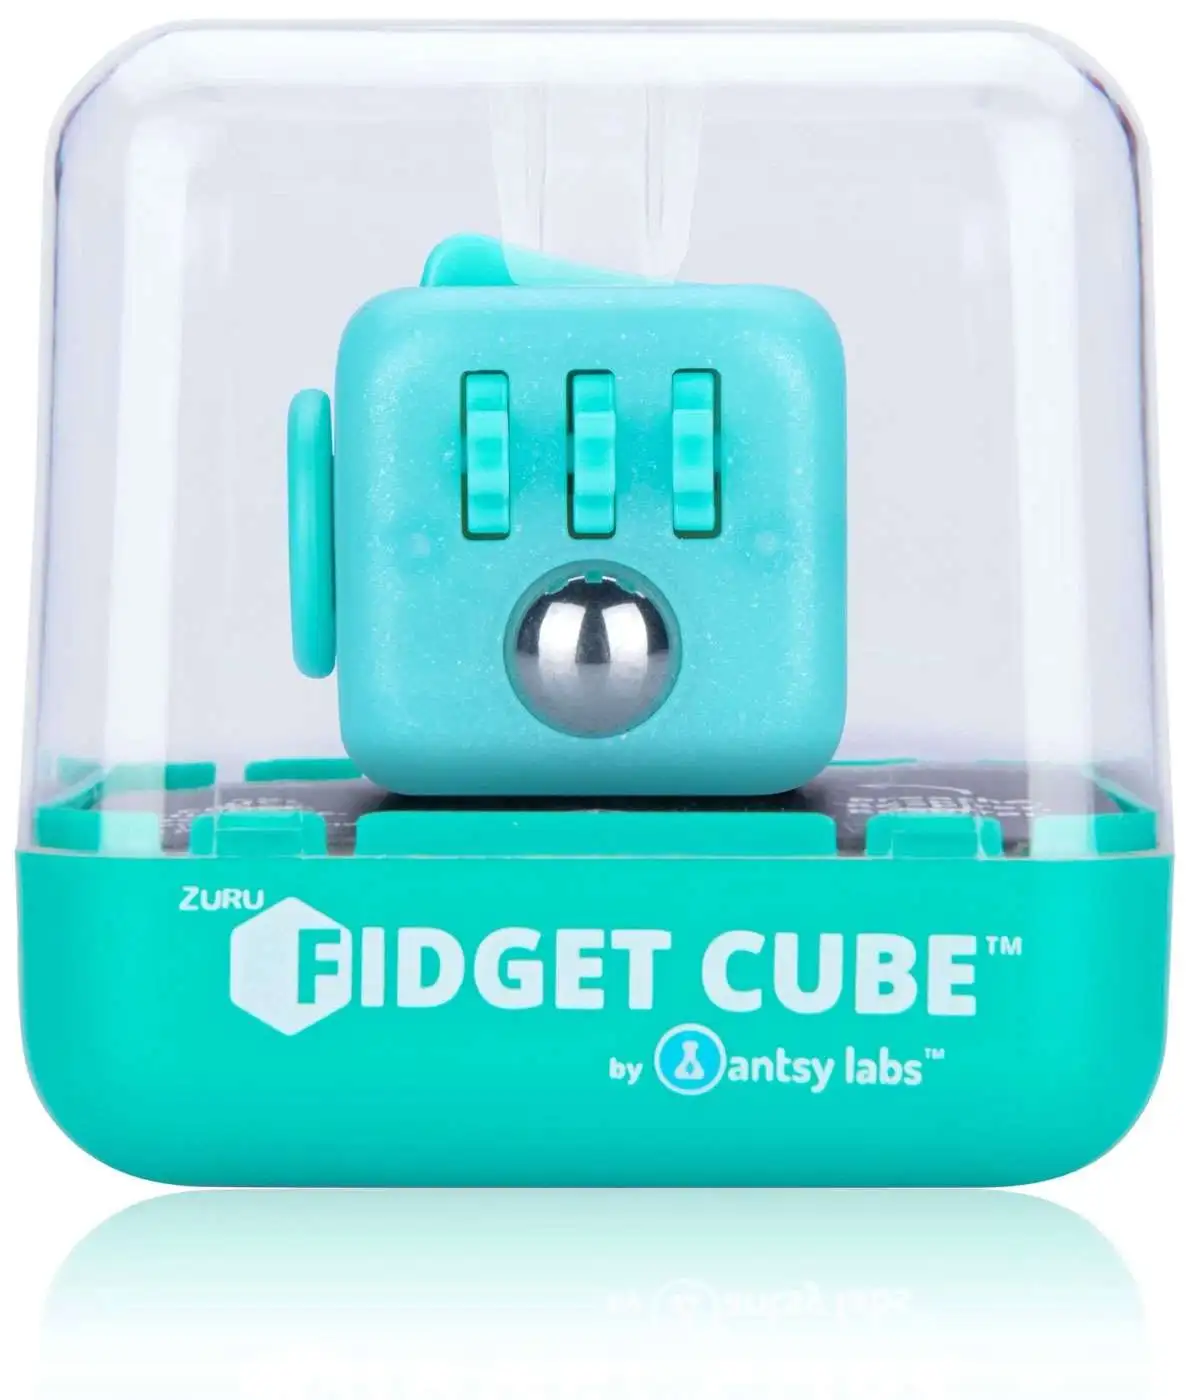 ZURU Fidget Cube by Antsy Labs - Neon Green Glow in The Dark Fidget Cube